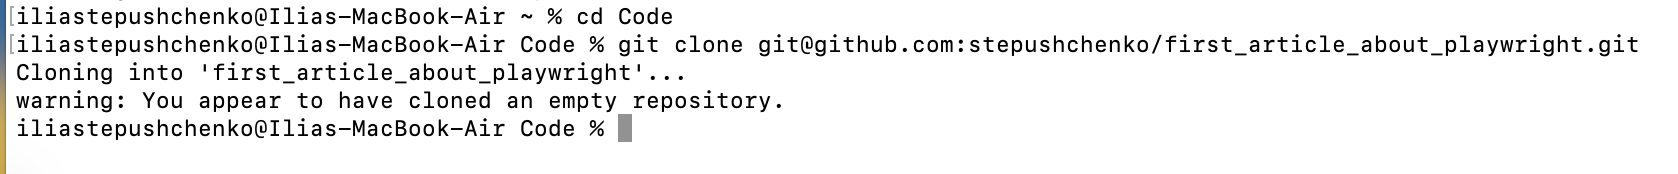 Процесс перехода к папке Code и клонирования репозитория с GitHub